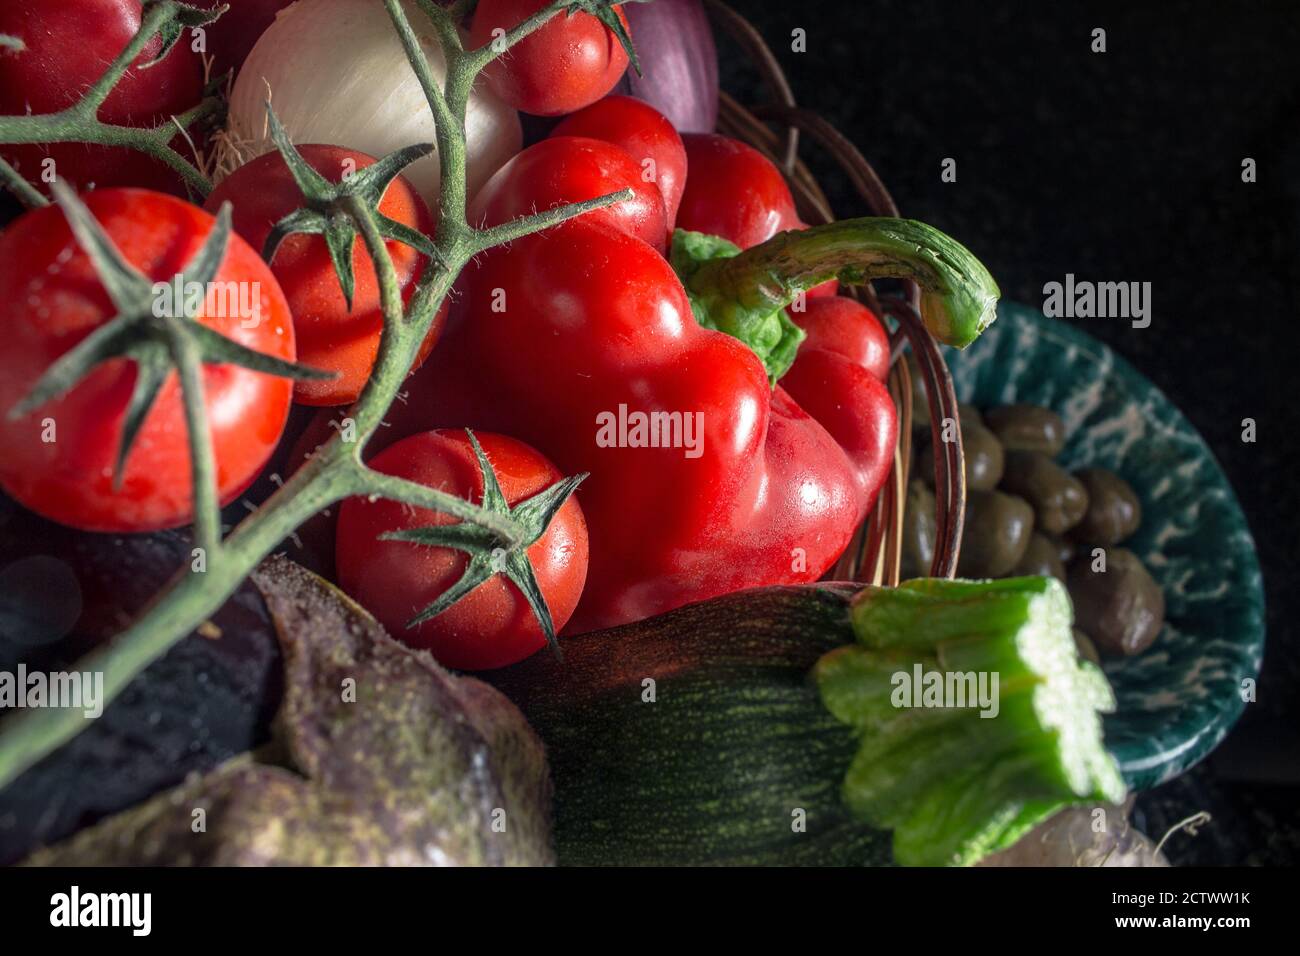 Detail von einigen gemischten Gemüse aus der mediterranen Küche - Sommer Gemüse in Süditalien Stockfoto